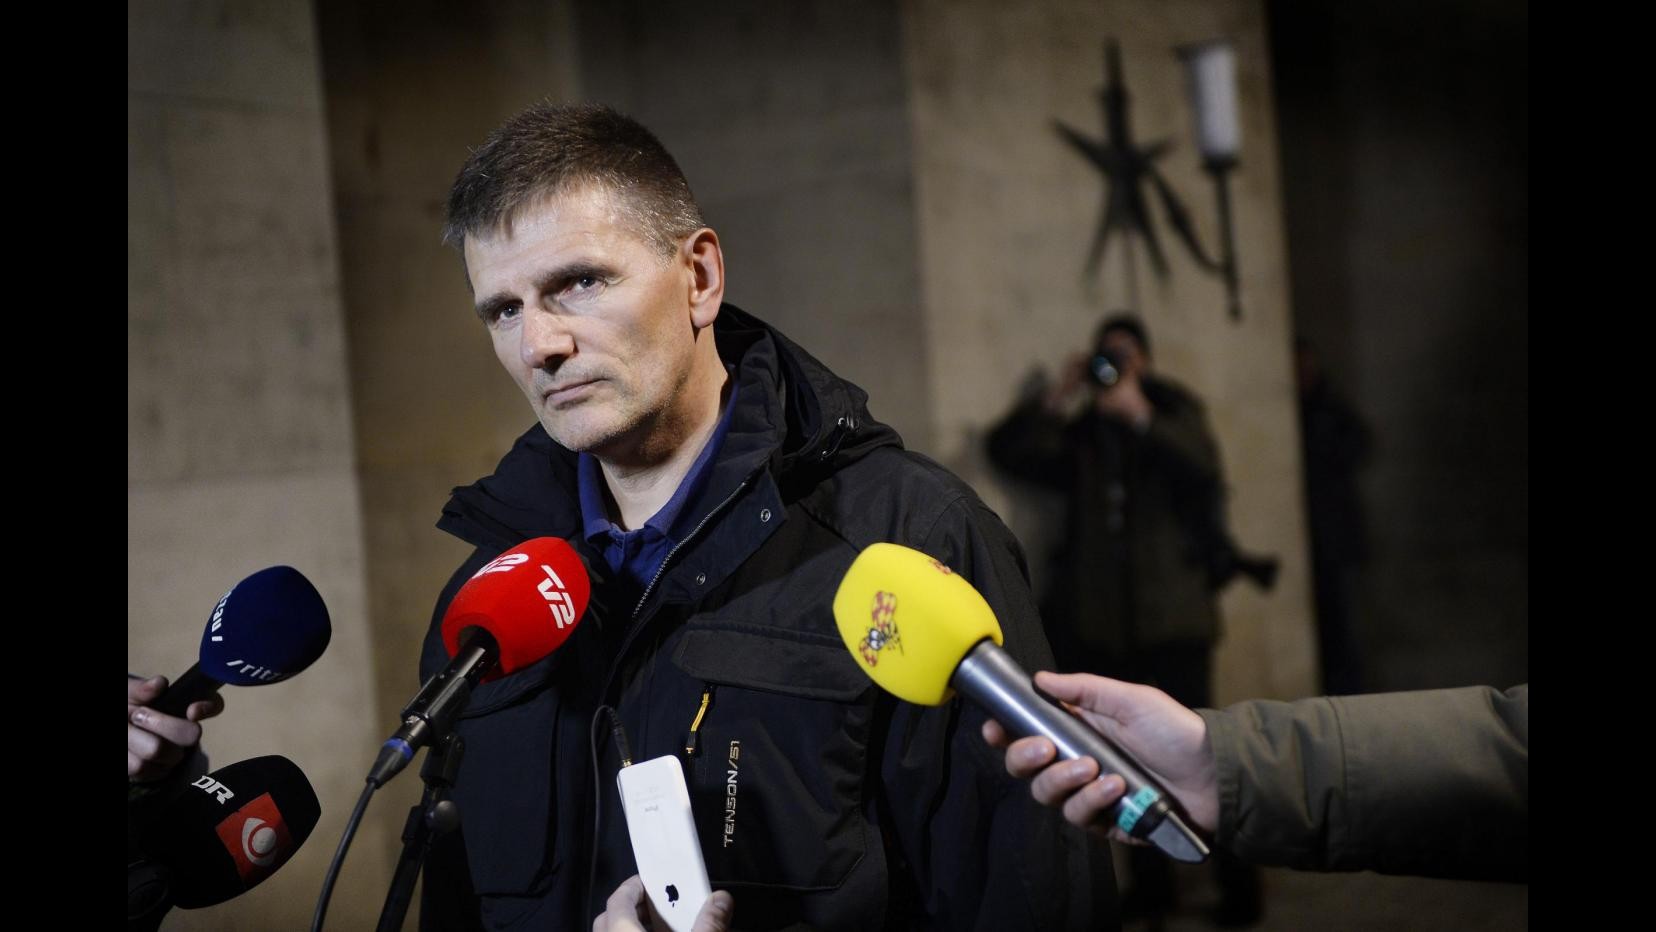 Danimarca, polizia: 3 agenti feriti sono fuori pericolo